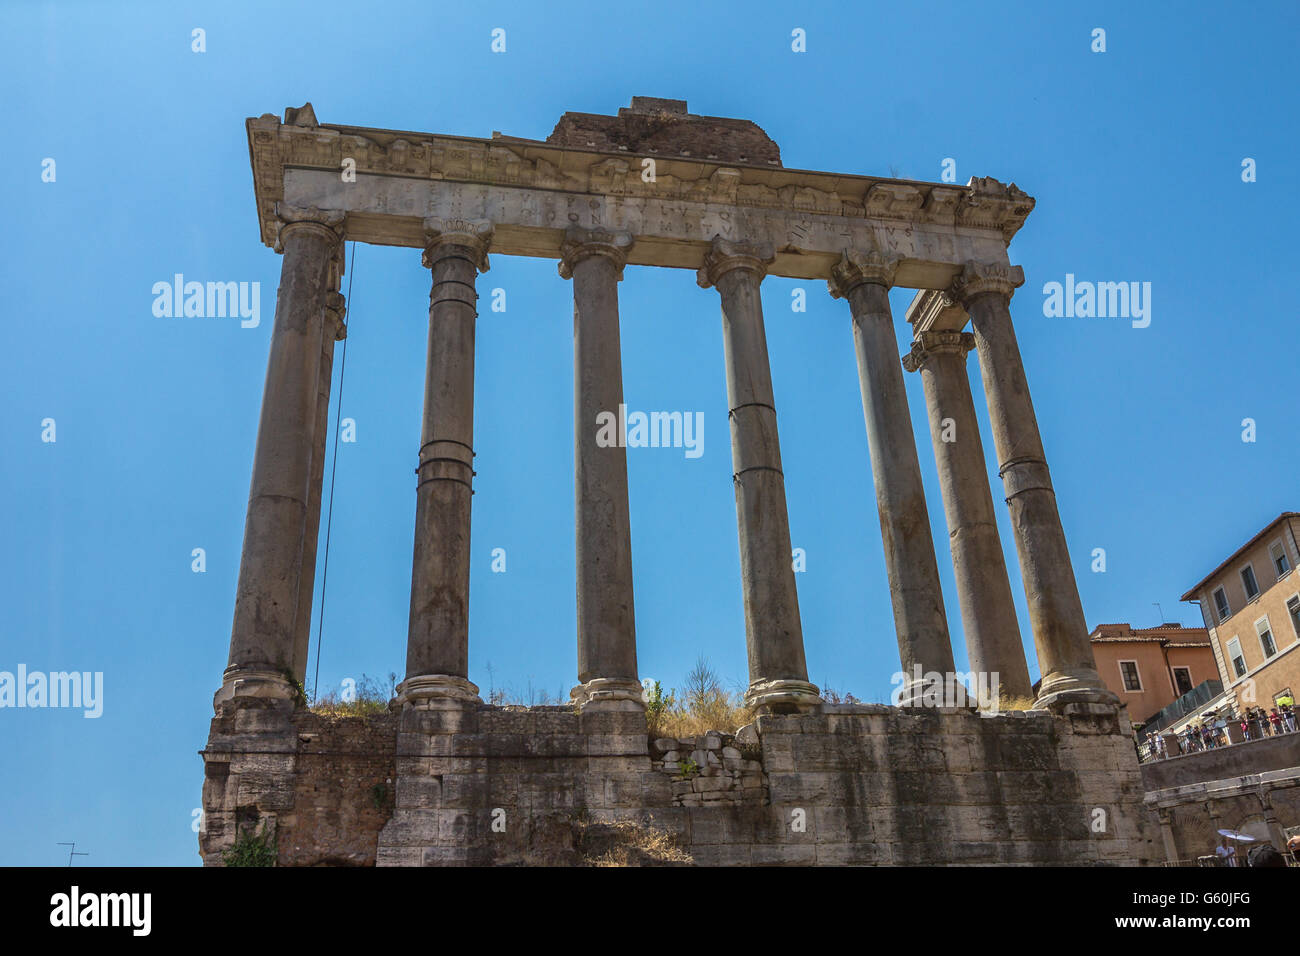 Les ruines du Forum de Rome Italie Banque D'Images